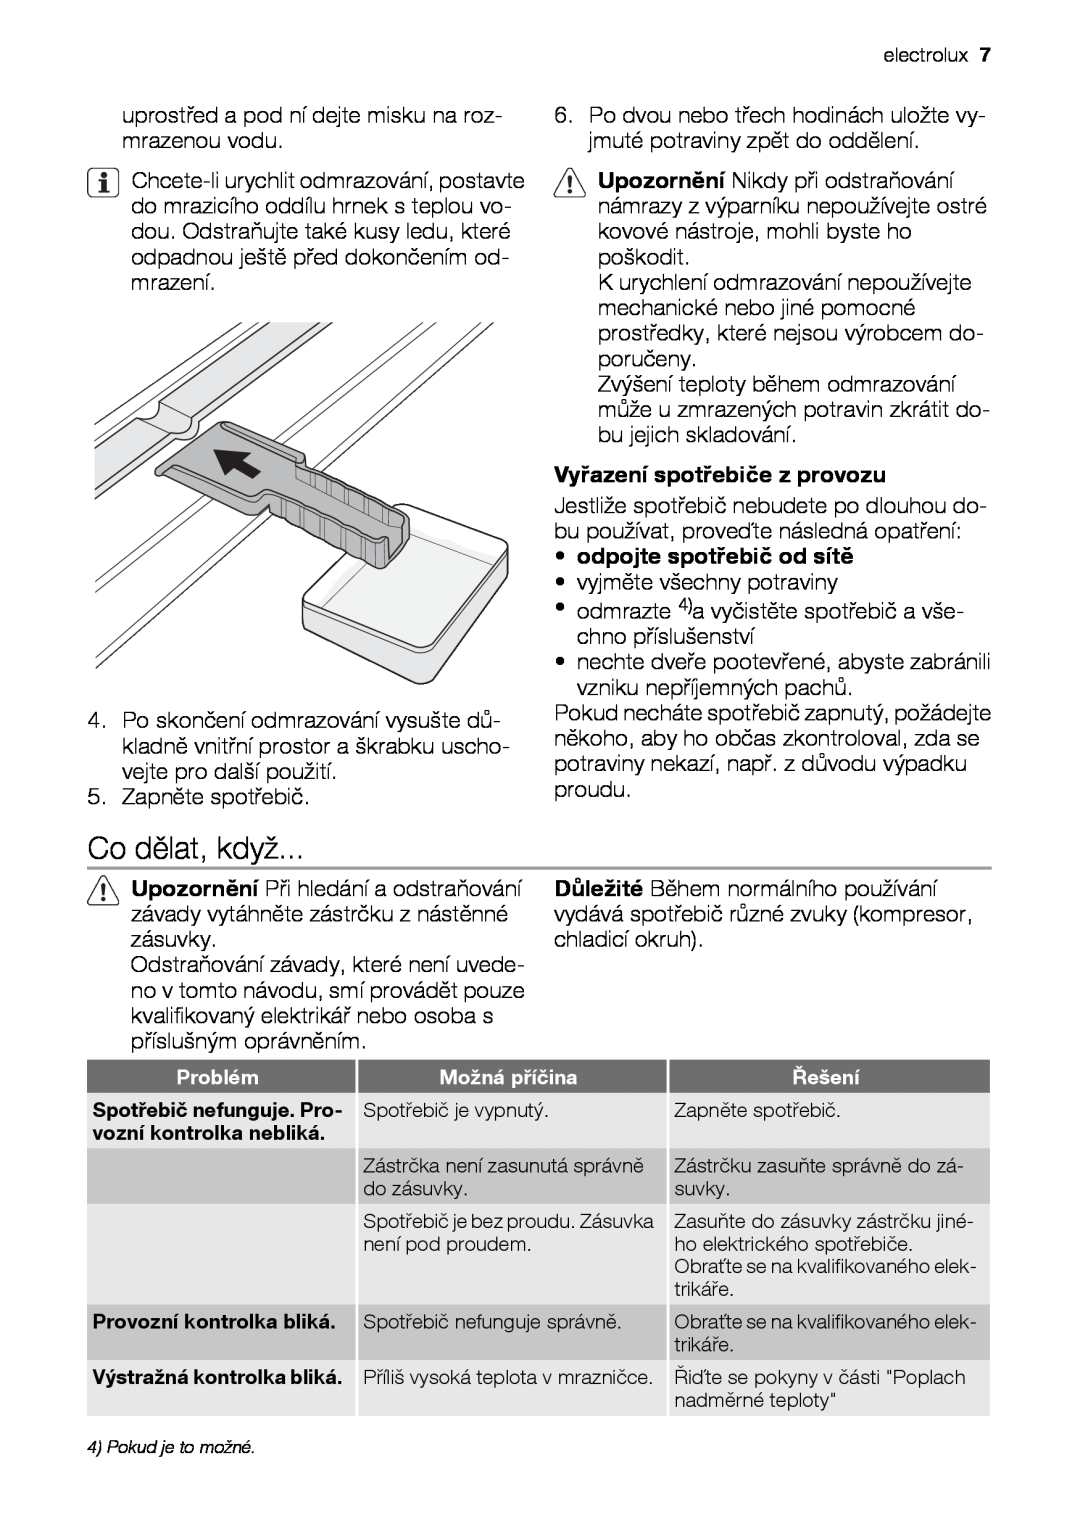 Electrolux EUN12510 user manual Co dělat, když, Vyřazení spotřebiče z provozu, odpojte spotřebič od sítě 